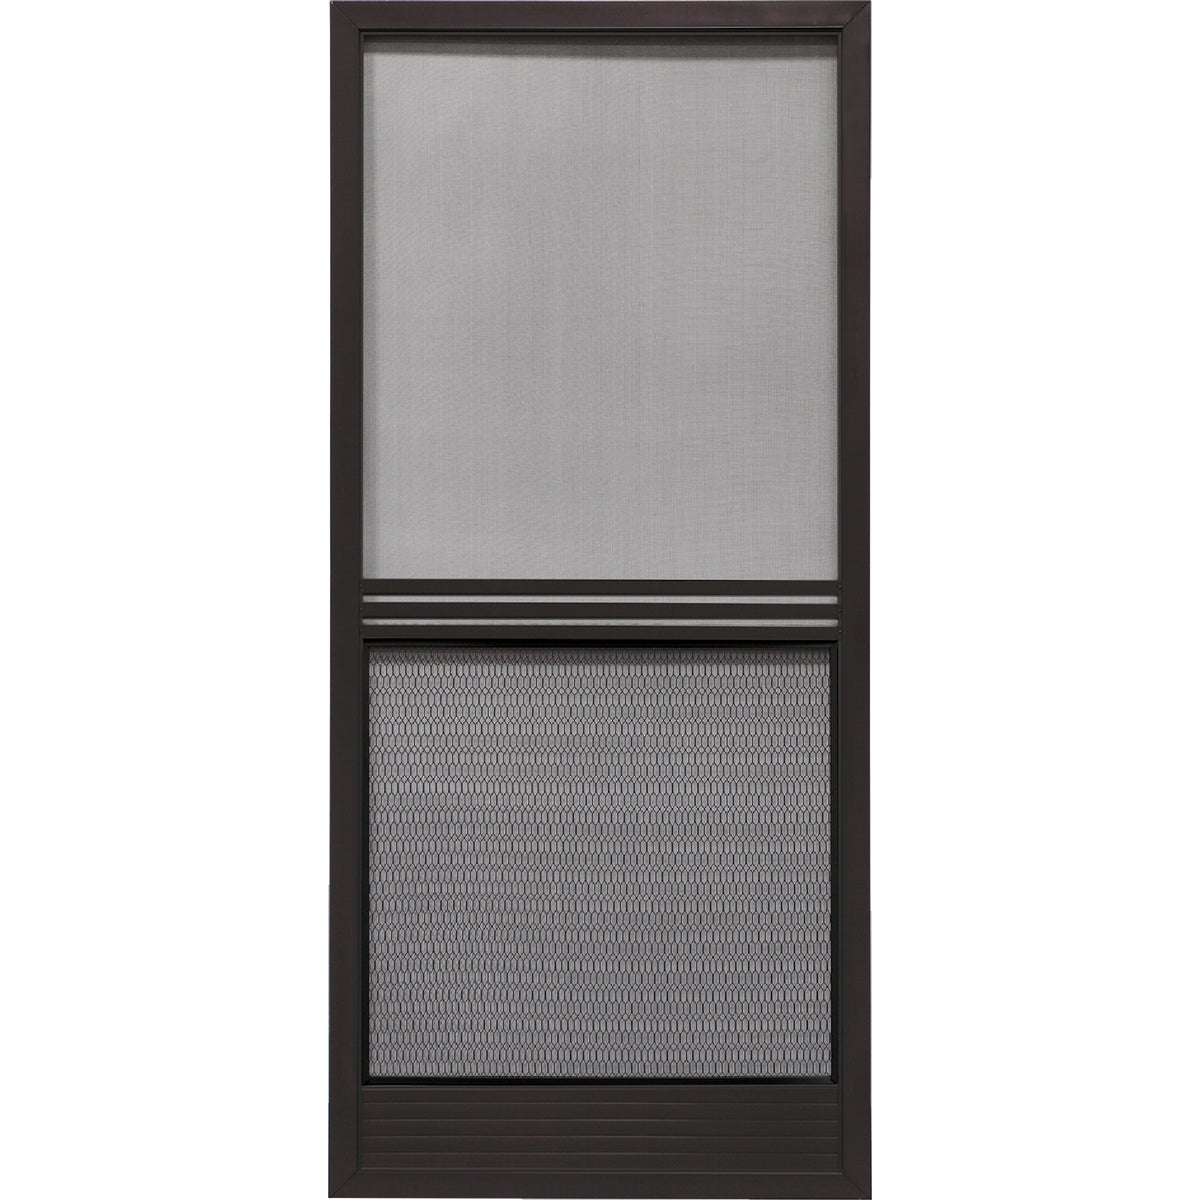 Item 160440, Swinging steel screen door. Features 2-inch x 7/8-inch 0.